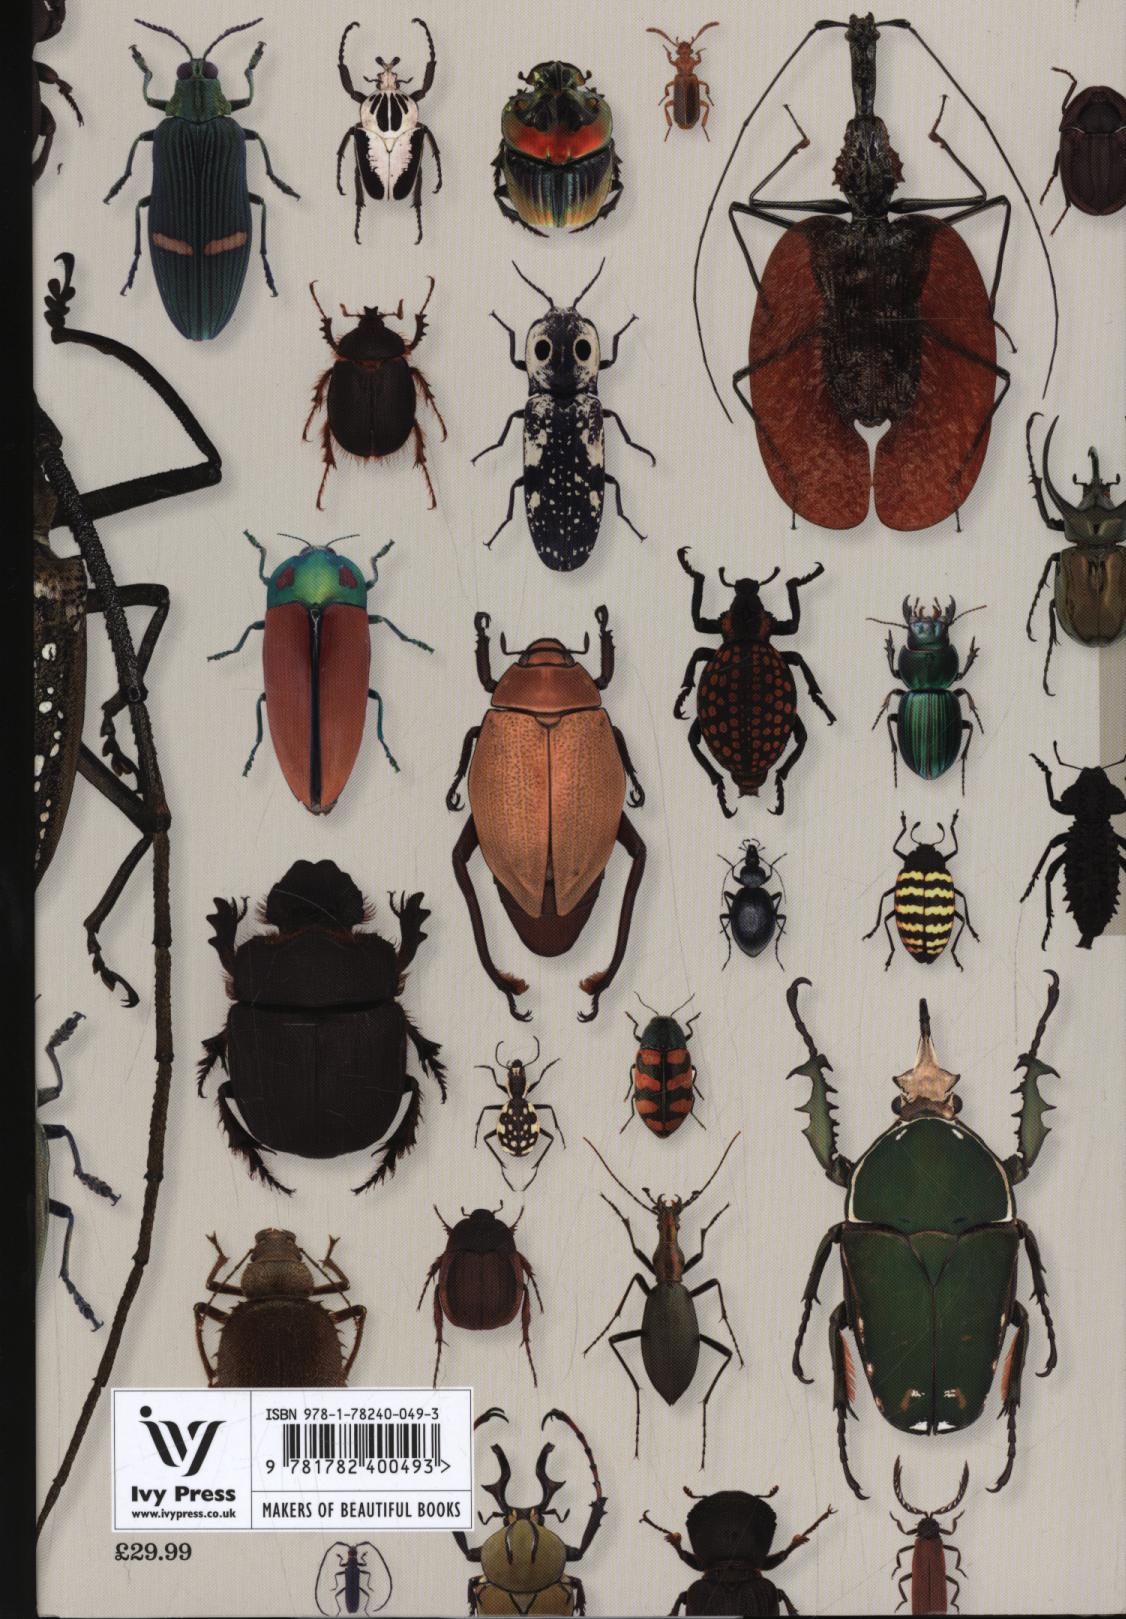 Book of Beetles